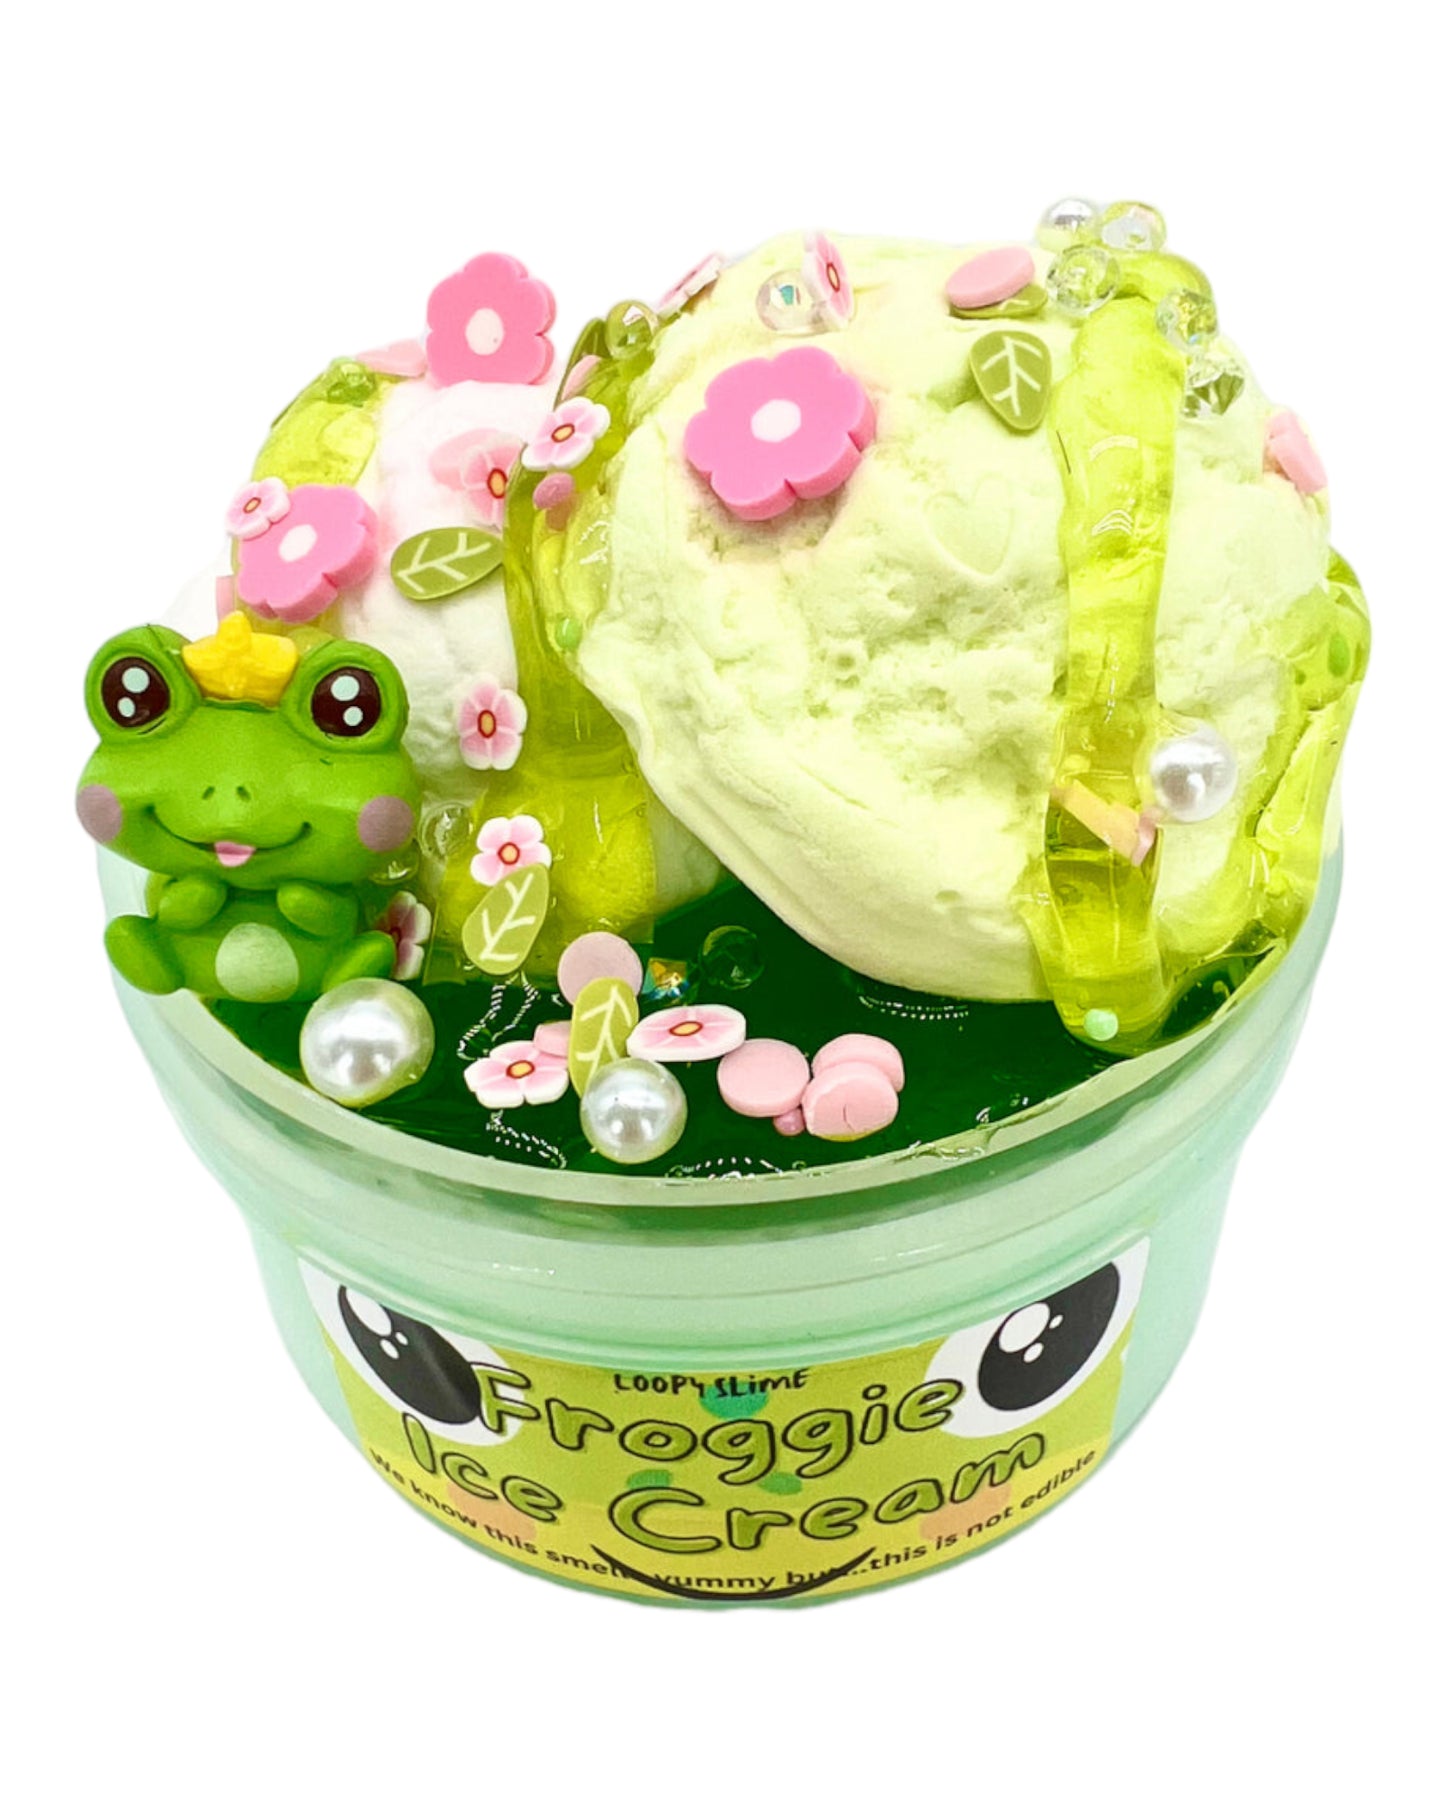 Froggie ice cream slime